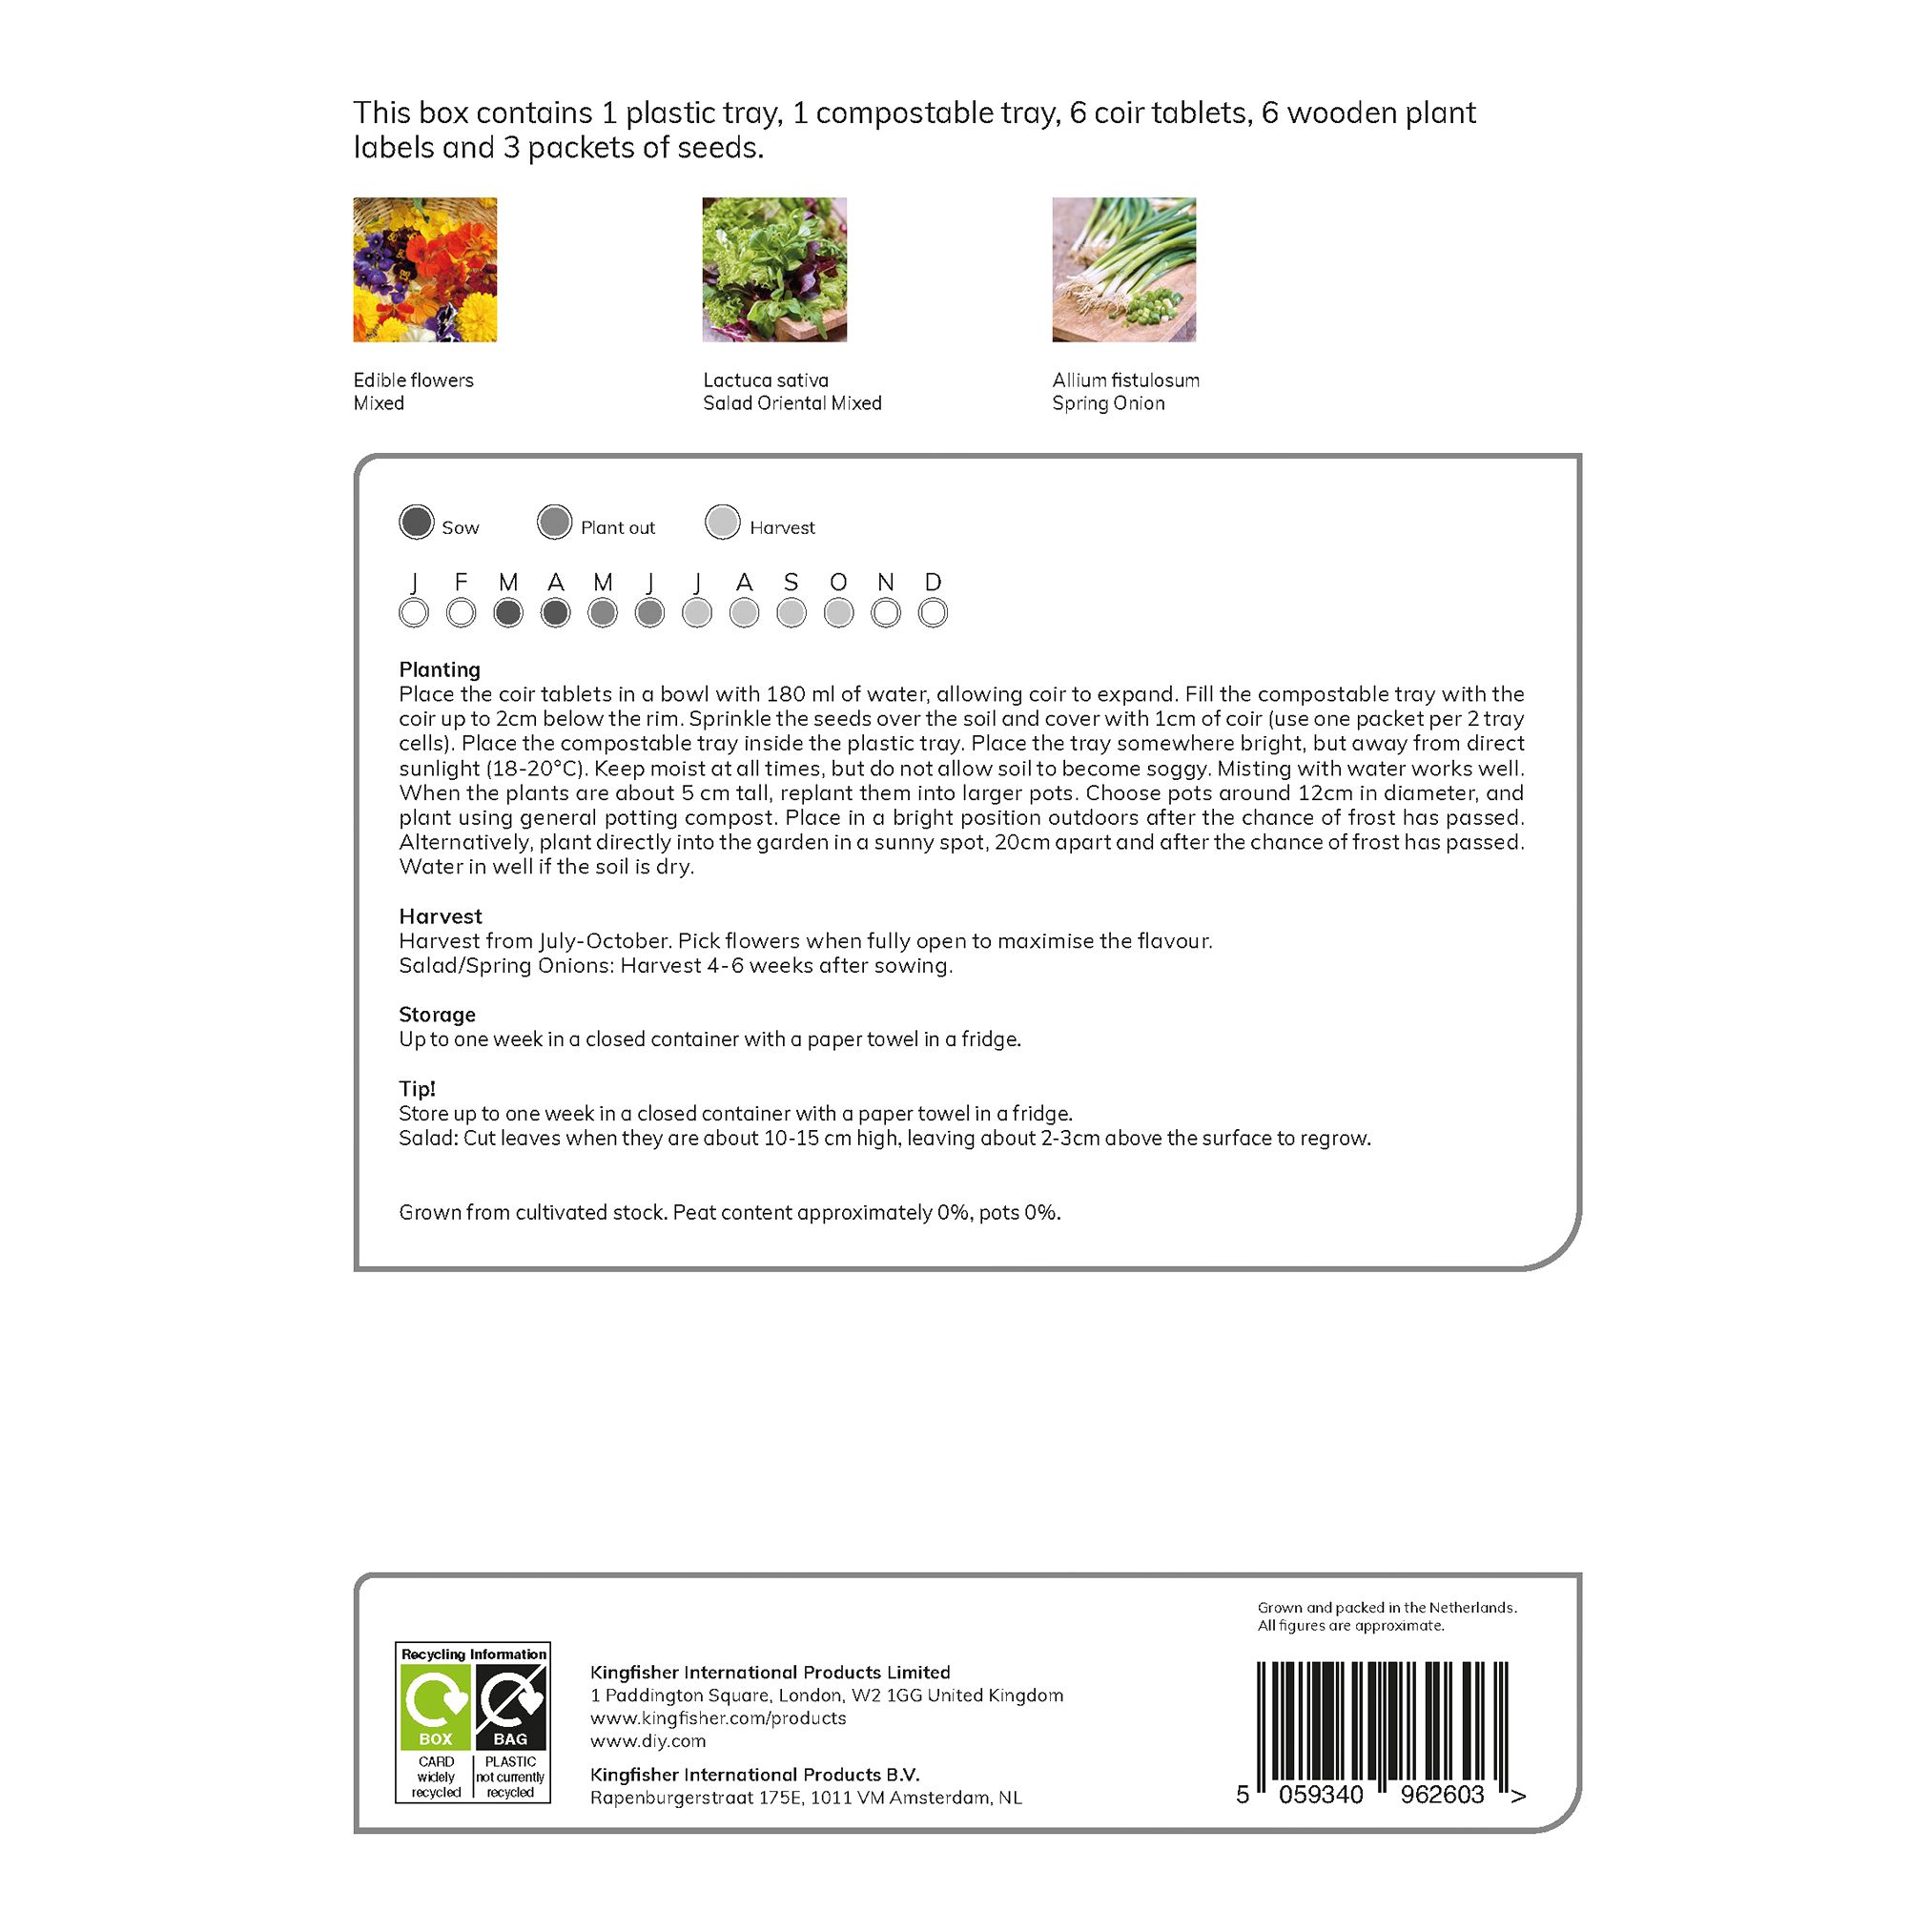 Verve Salad Vegetable bulbs & seeds kit